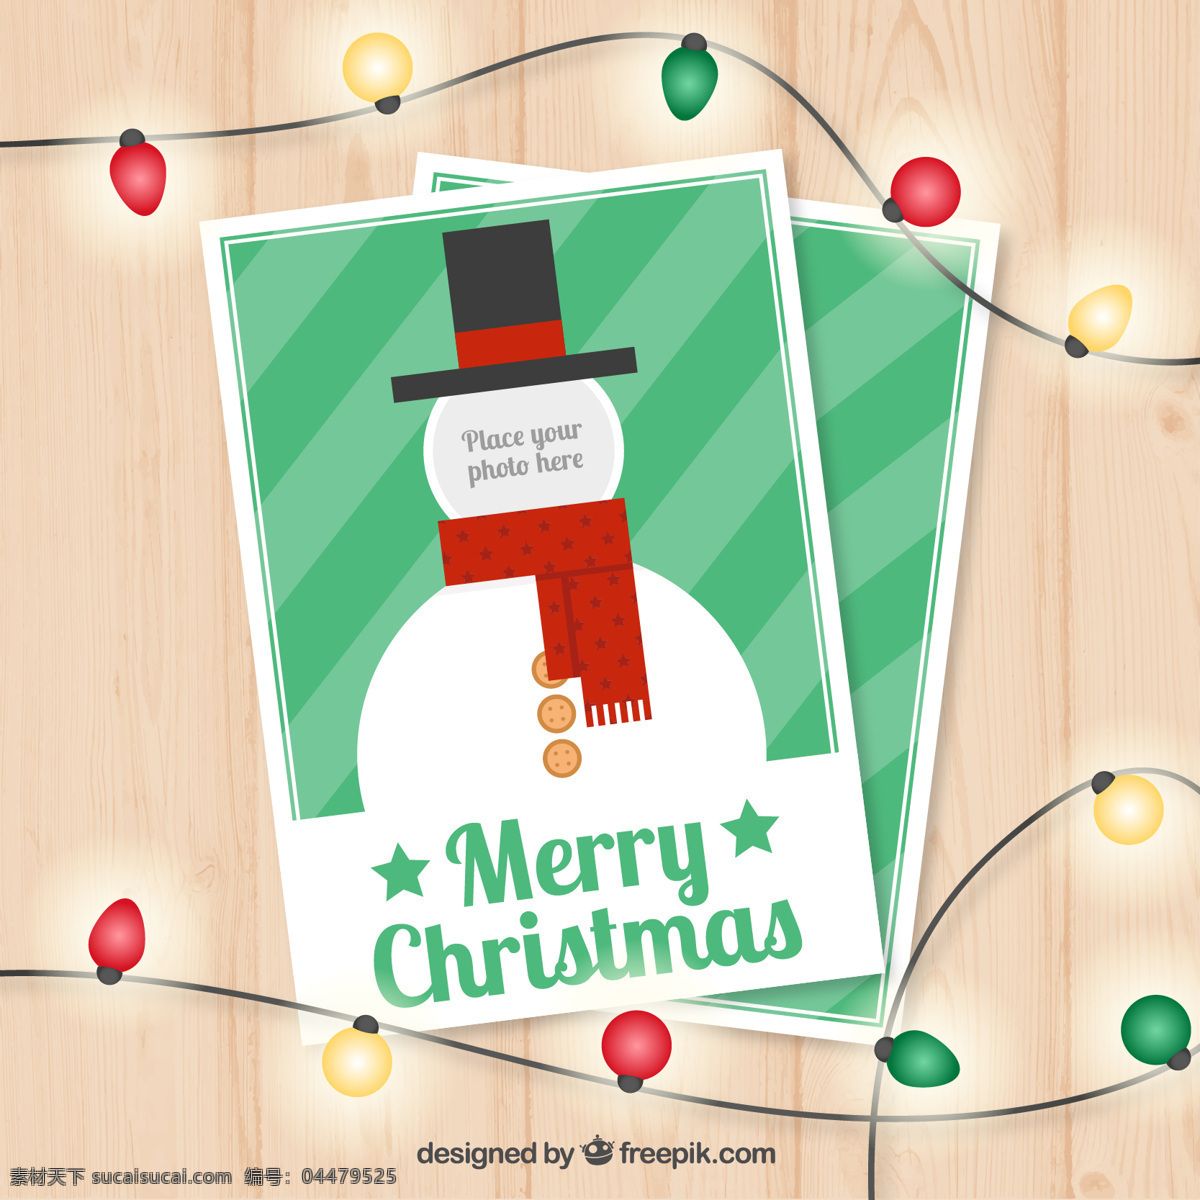 雪人卡片模板 圣诞卡 模板 圣诞快乐 冬天快乐 圣诞 庆祝 节日 雪人 节日快乐 贺卡 问候 季节 快乐 十二月 白色